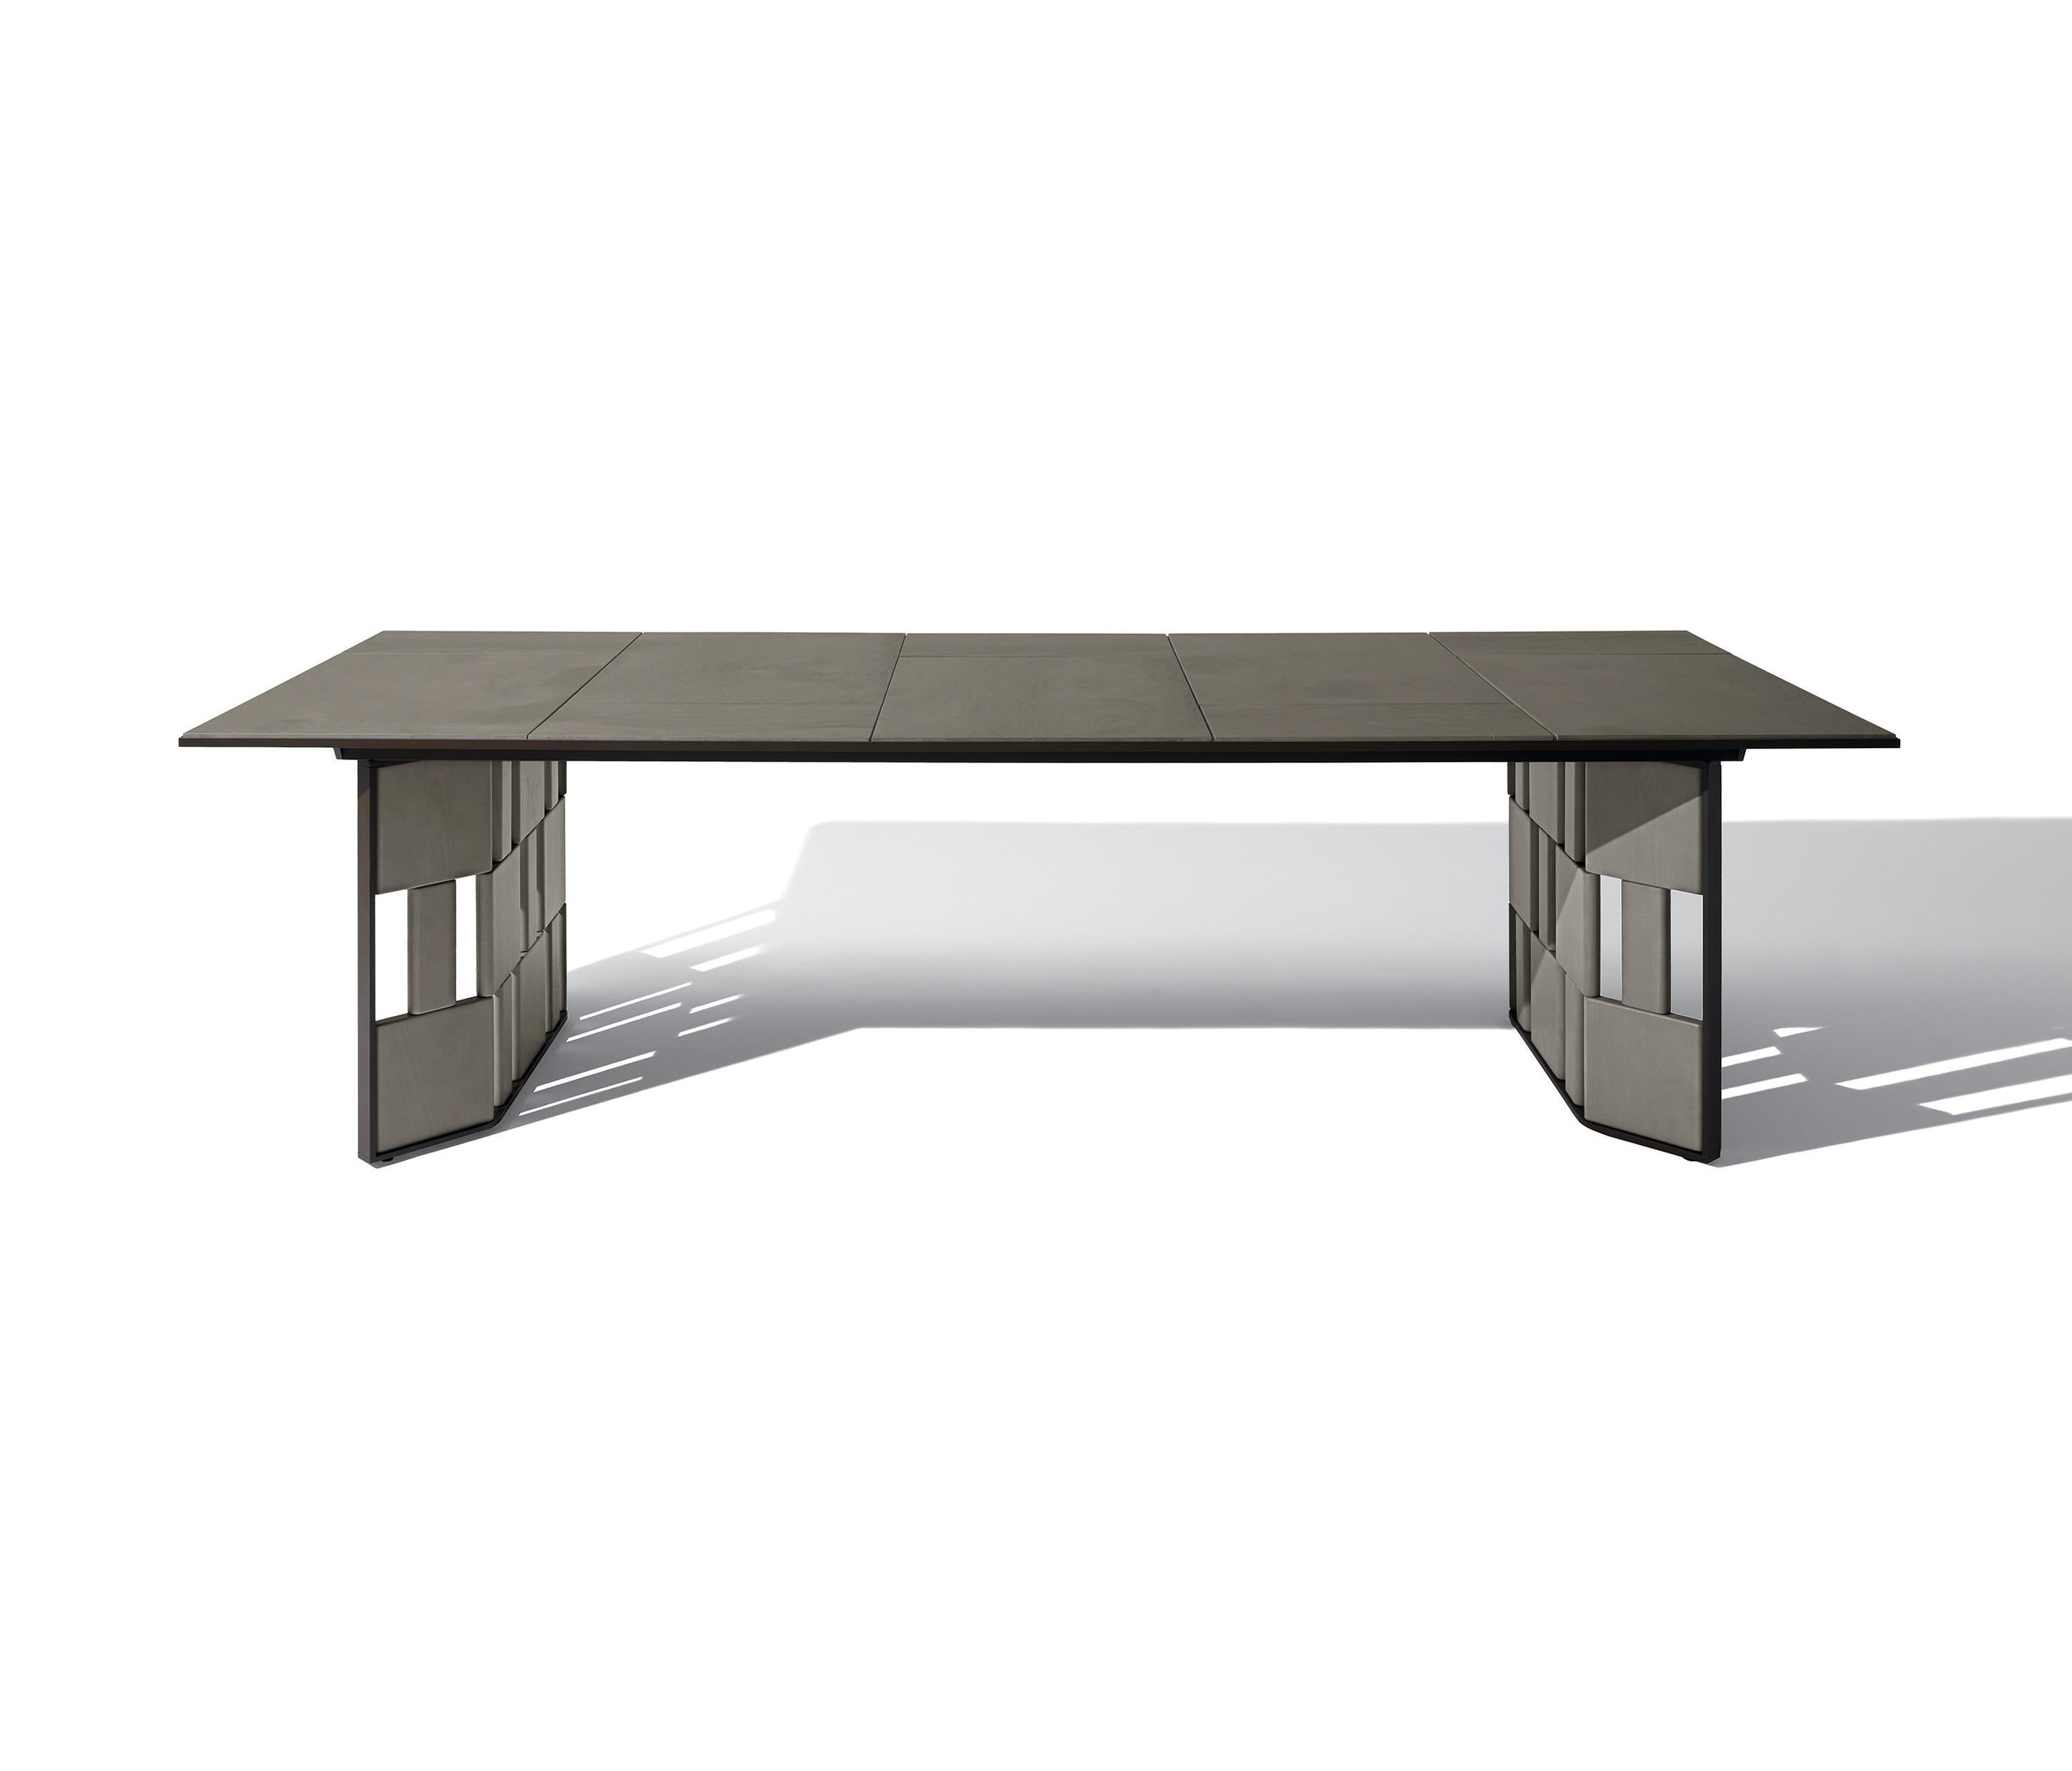 Ludovica+Roberto Palomba haben für Giorgetti den Break Outdoor Dining Table entworfen, der die Dualität von Form und Funktion zum Ausdruck bringt.

Das Gestell besteht aus Aluminium und geschütztem Edelstahl, pulverlackiert in der Farbe